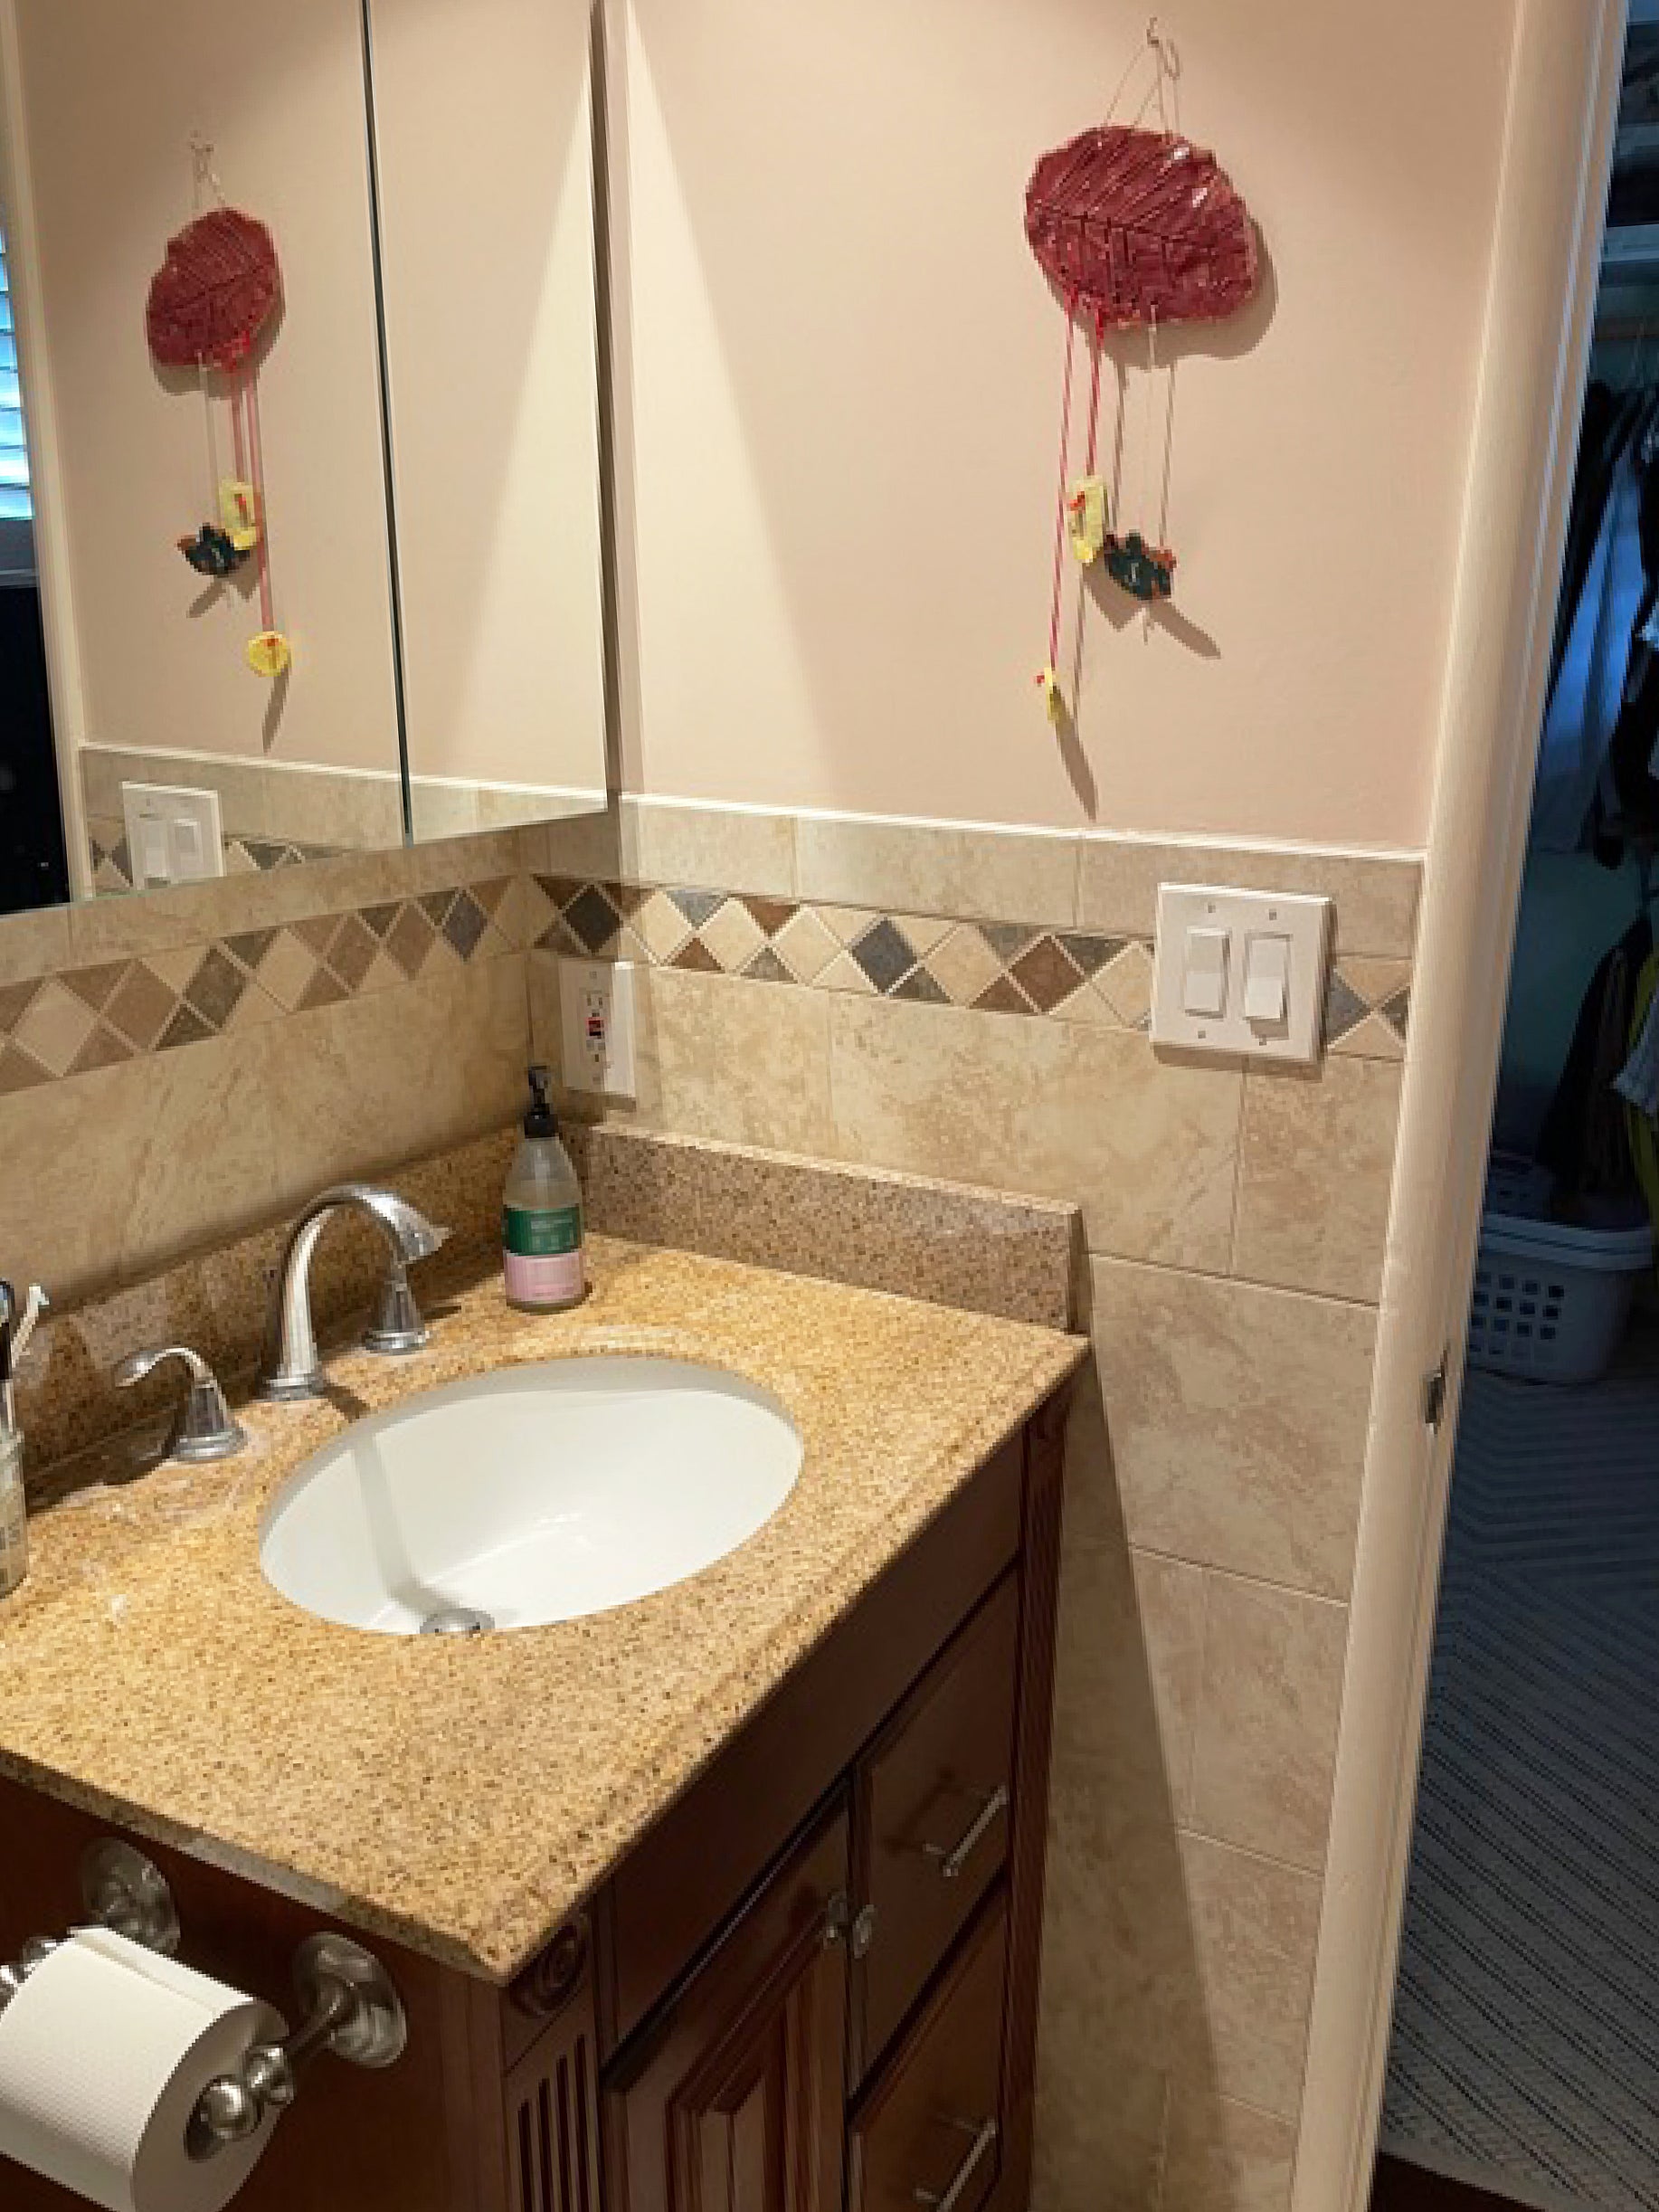 dated single sink vanity